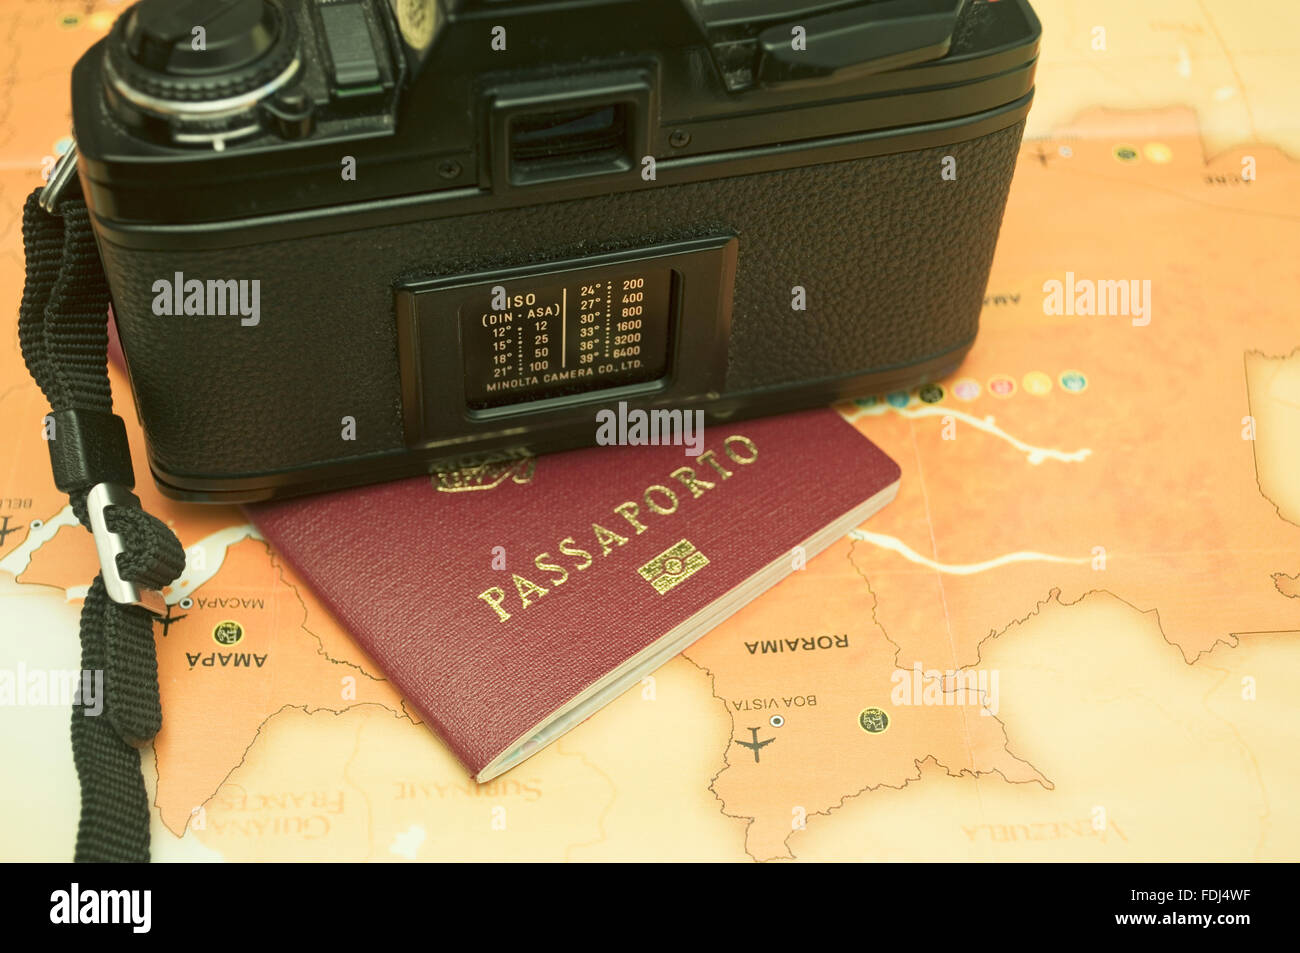 analog camera, italian passport and a brazilian map Stock Photo - Alamy